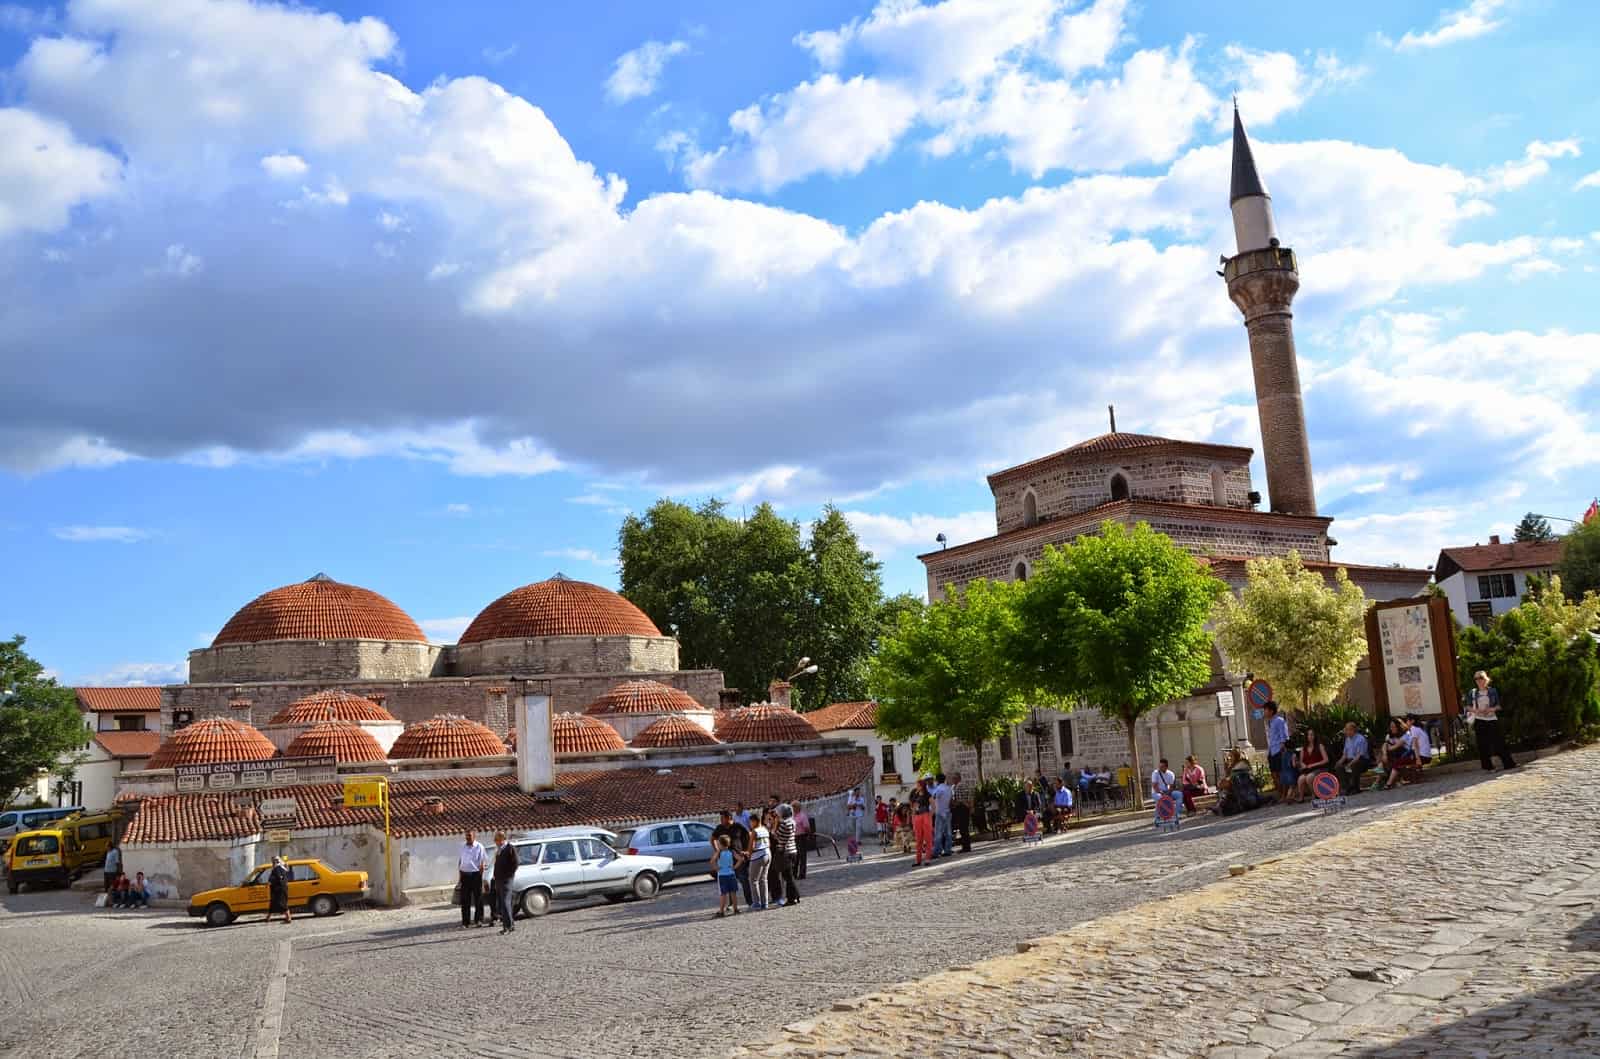 Cinci Hamamı and Kazdağlı Camii in Safranbolu, Turkey